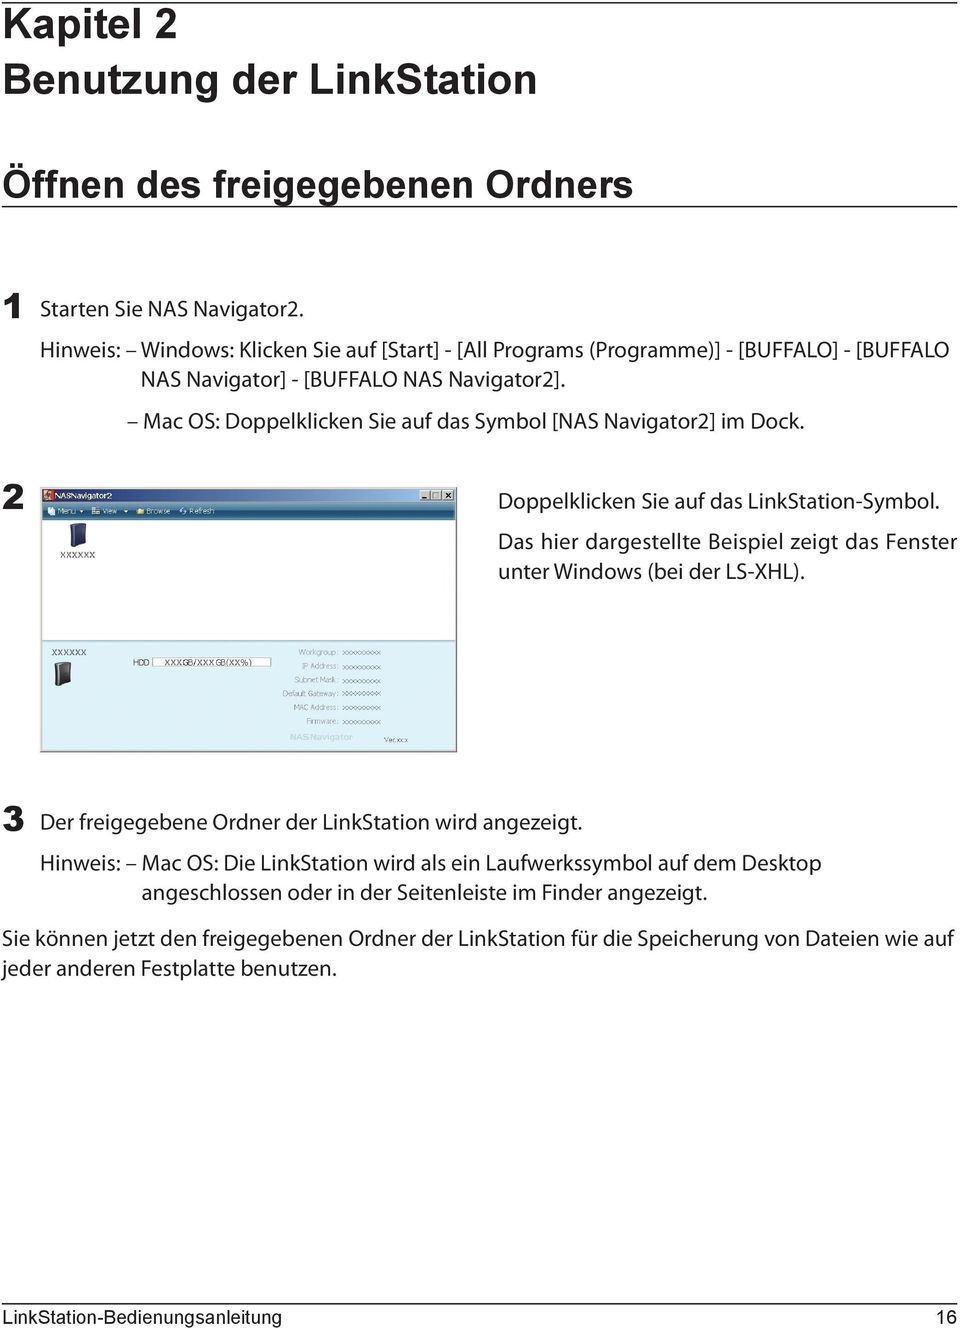 LinkStation Bedienungsanleitung - PDF Download